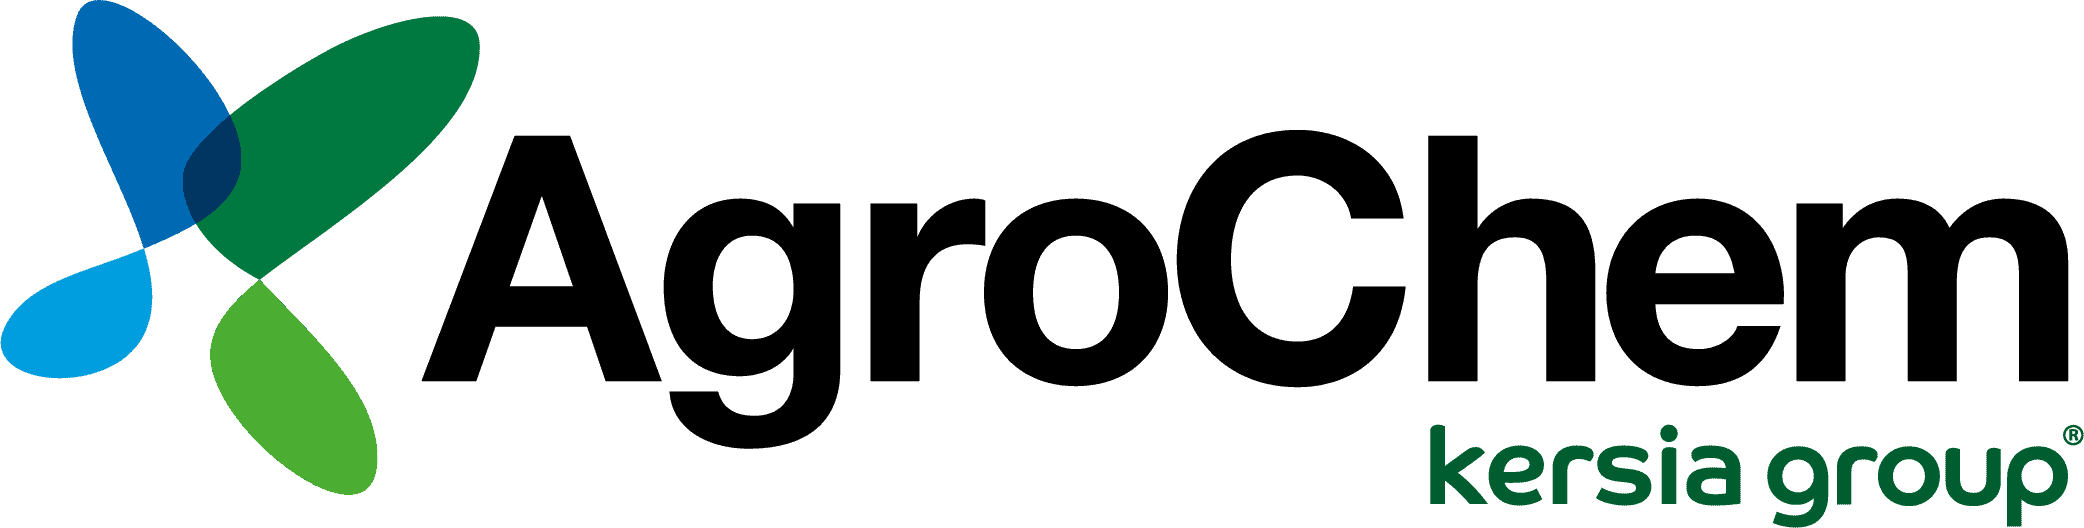 Agrochem-USA_logo image